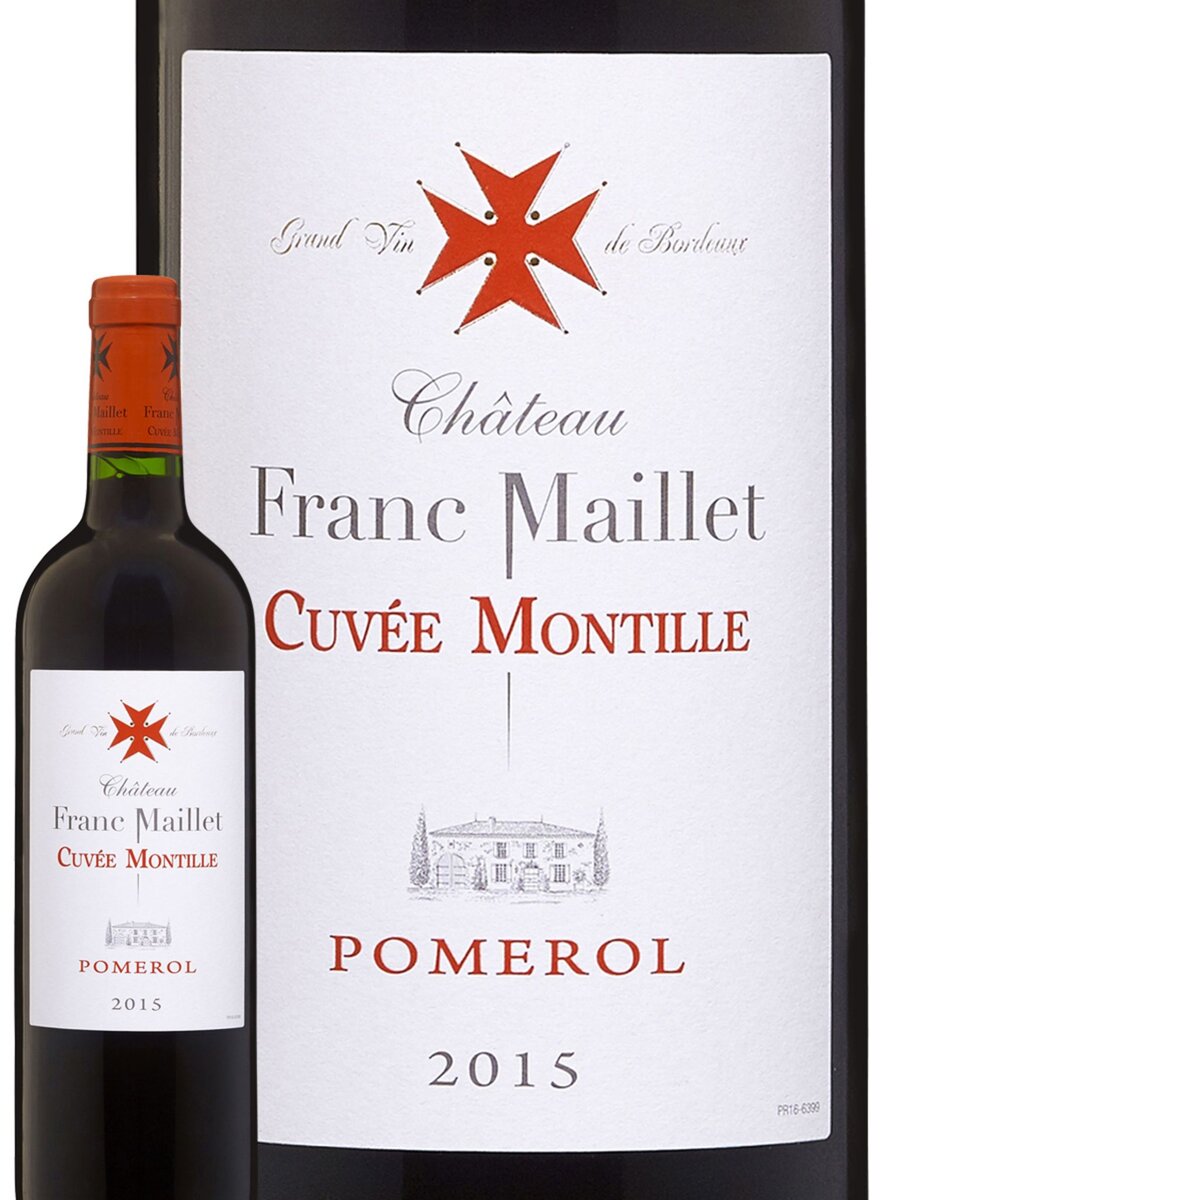 Château Franc Maillet Pomerol Cuvée Montille Rouge 2015